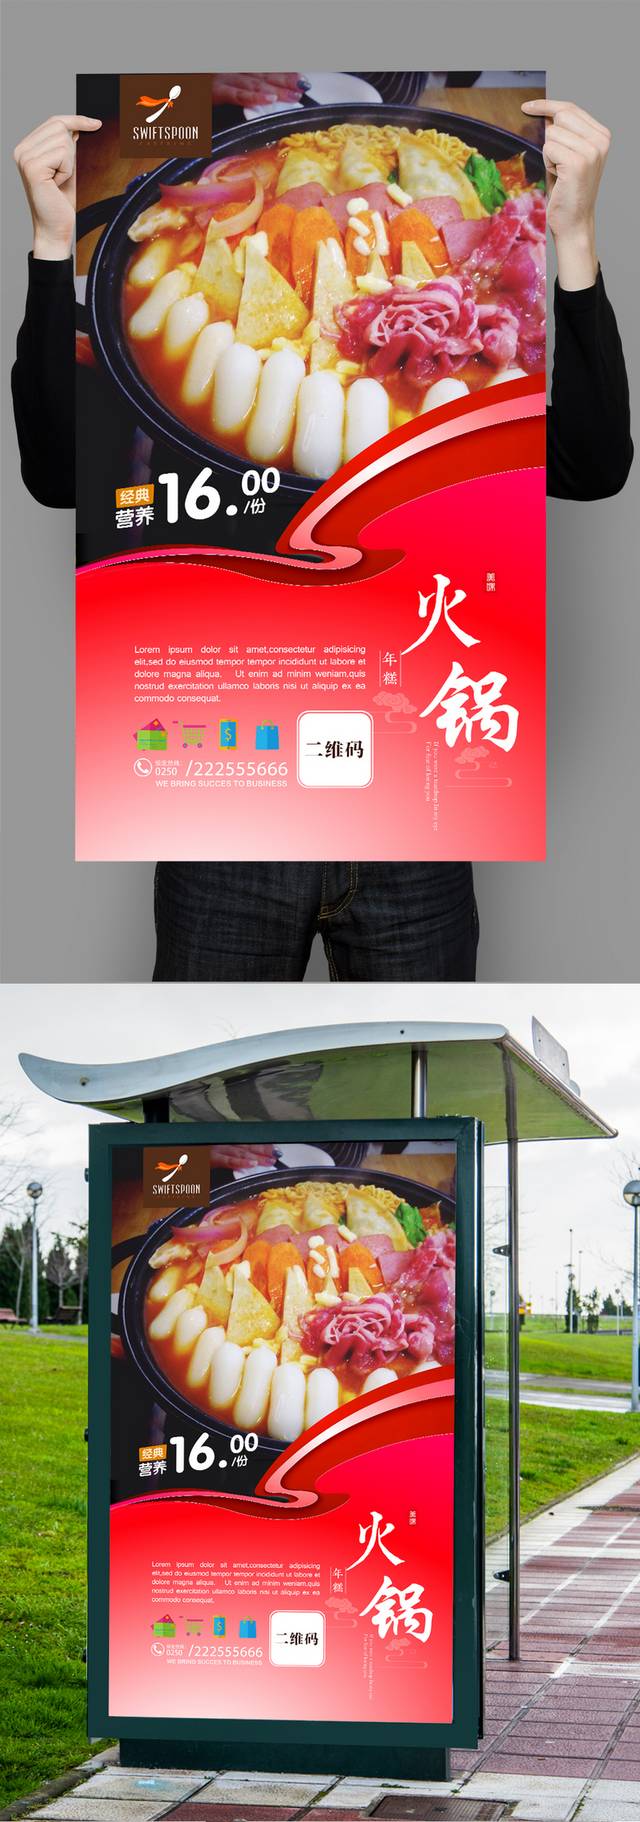 韩式年糕火锅美食宣传海报设计